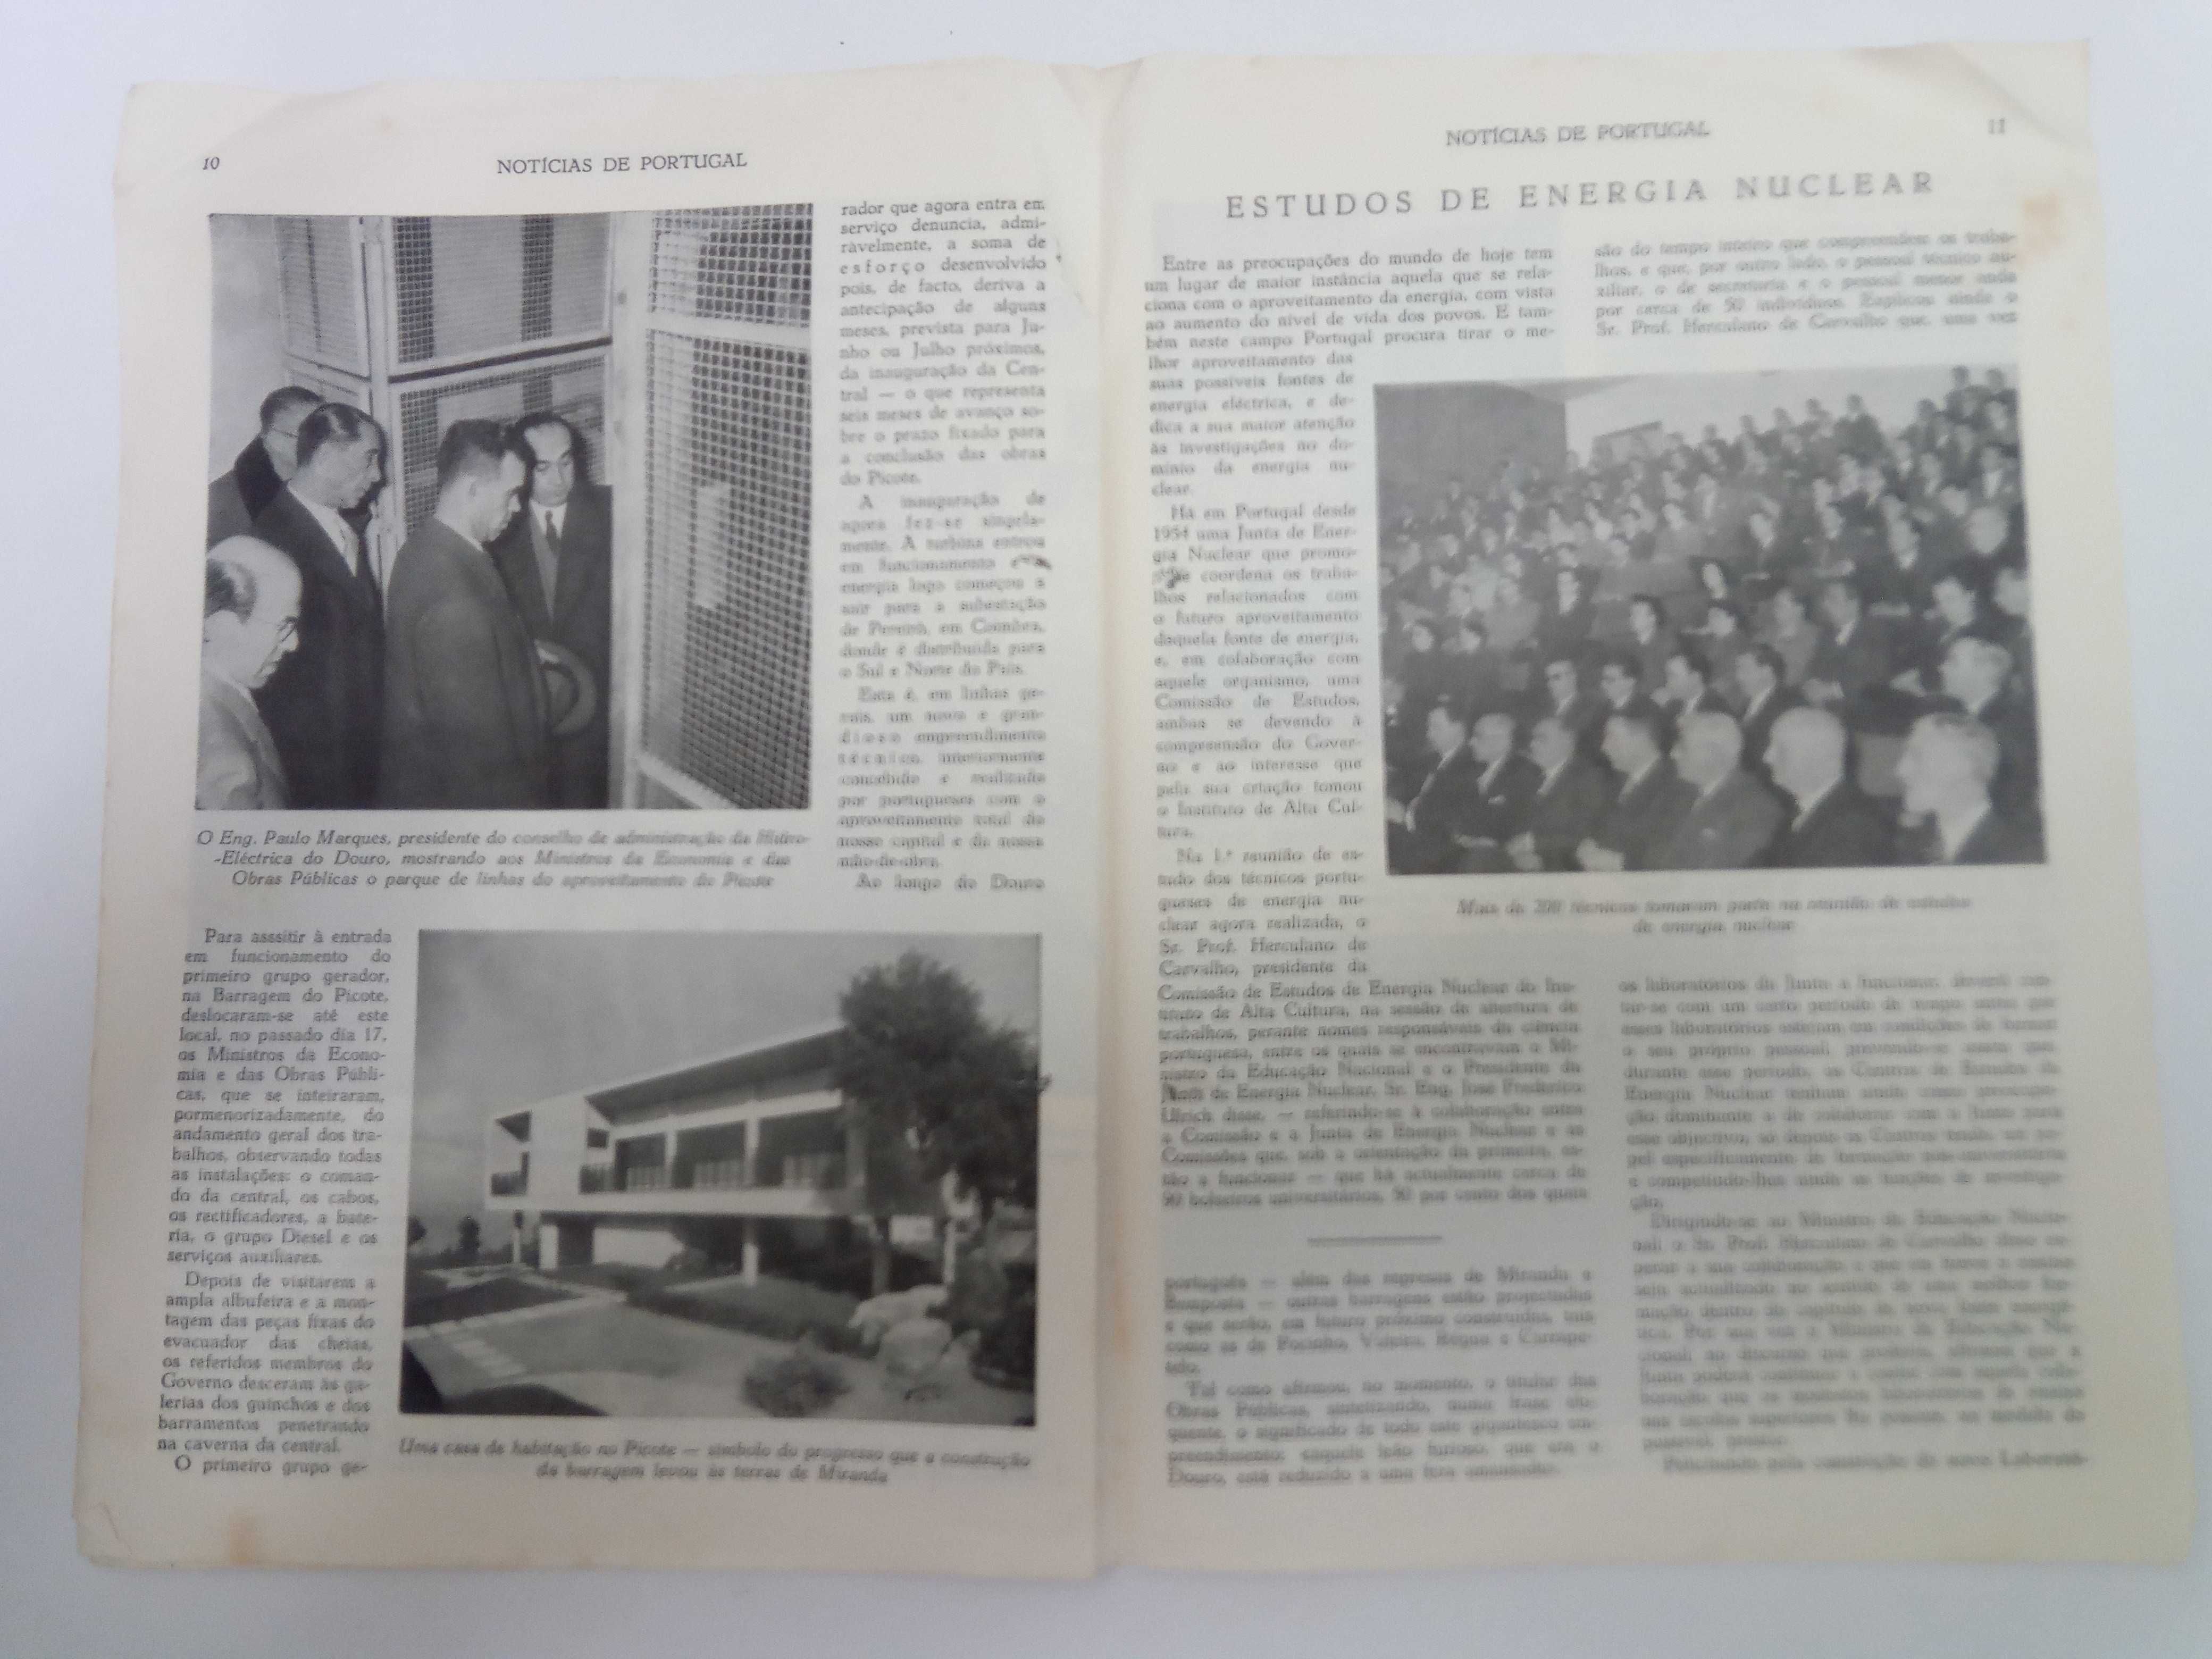 Noticias de Portugal "Boletim Semanal Sec Nac Informação" 1958 e 1961